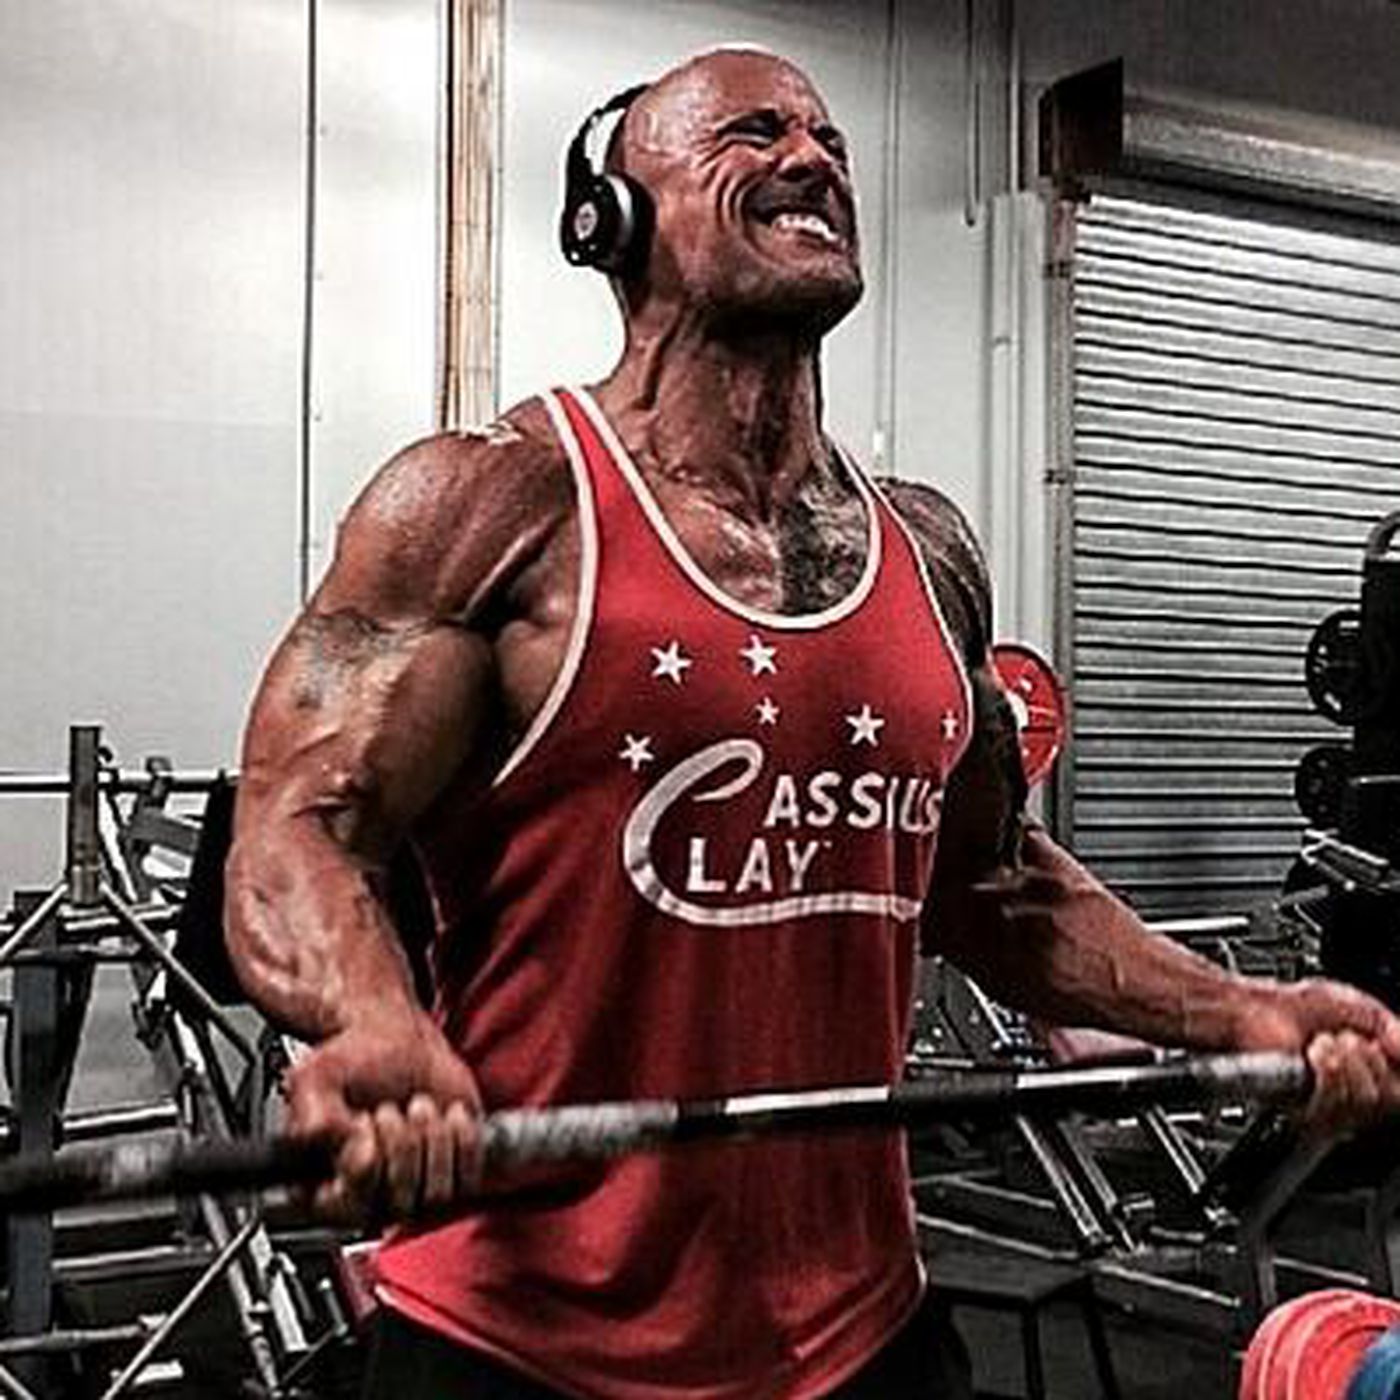 The Rock steroids Dwayne Johnson